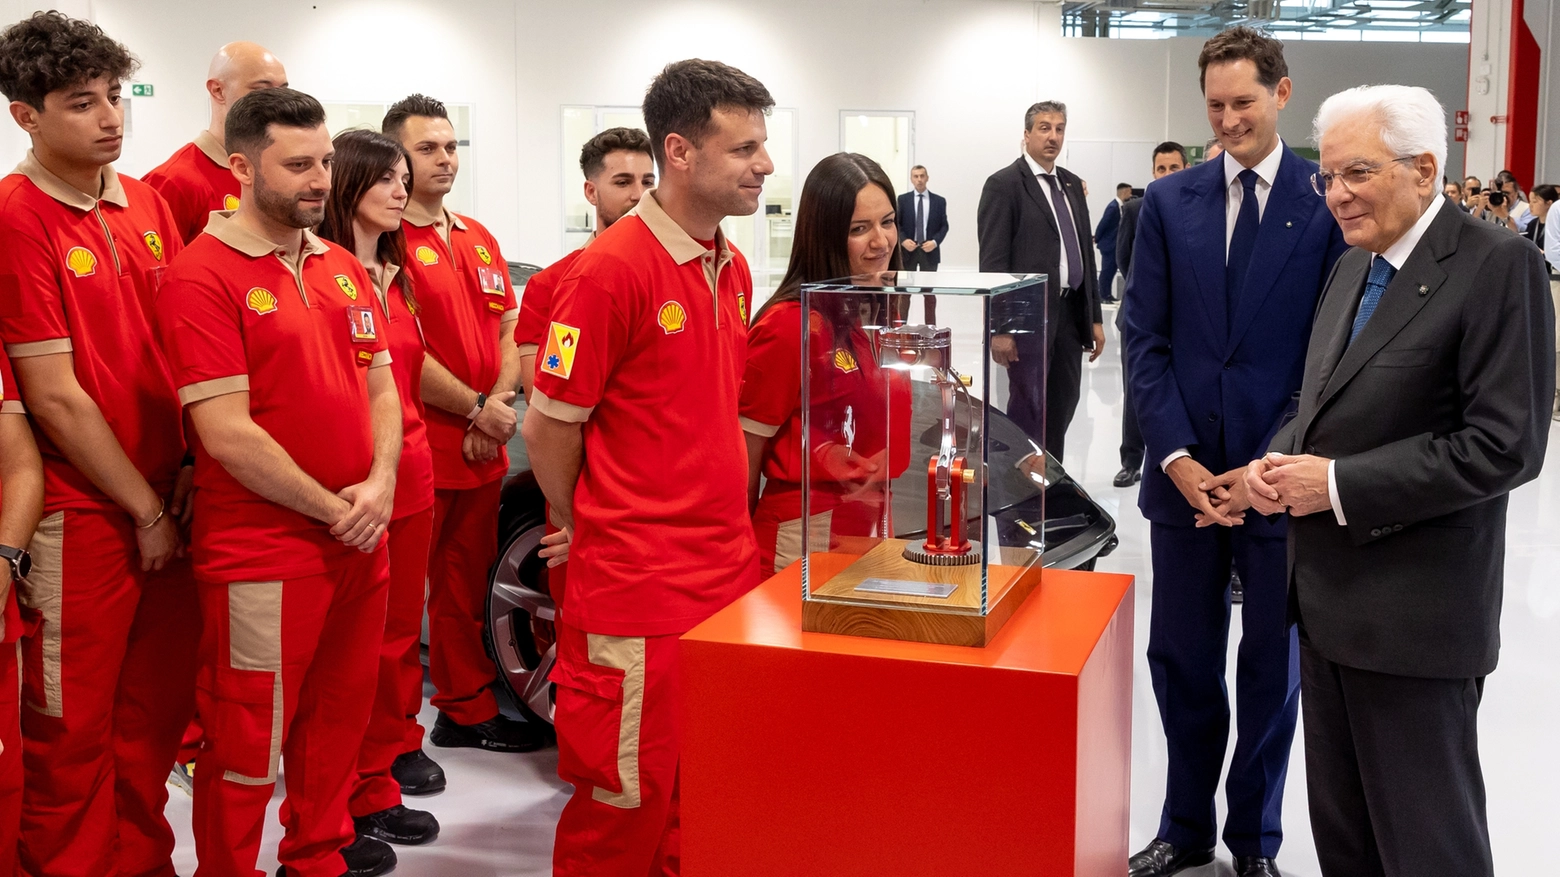 Il Presidente Mattarella ha ricevuto in dono una lampada artigianale realizzata con pezzi di motori di Ferrari (Foto Ferrari)